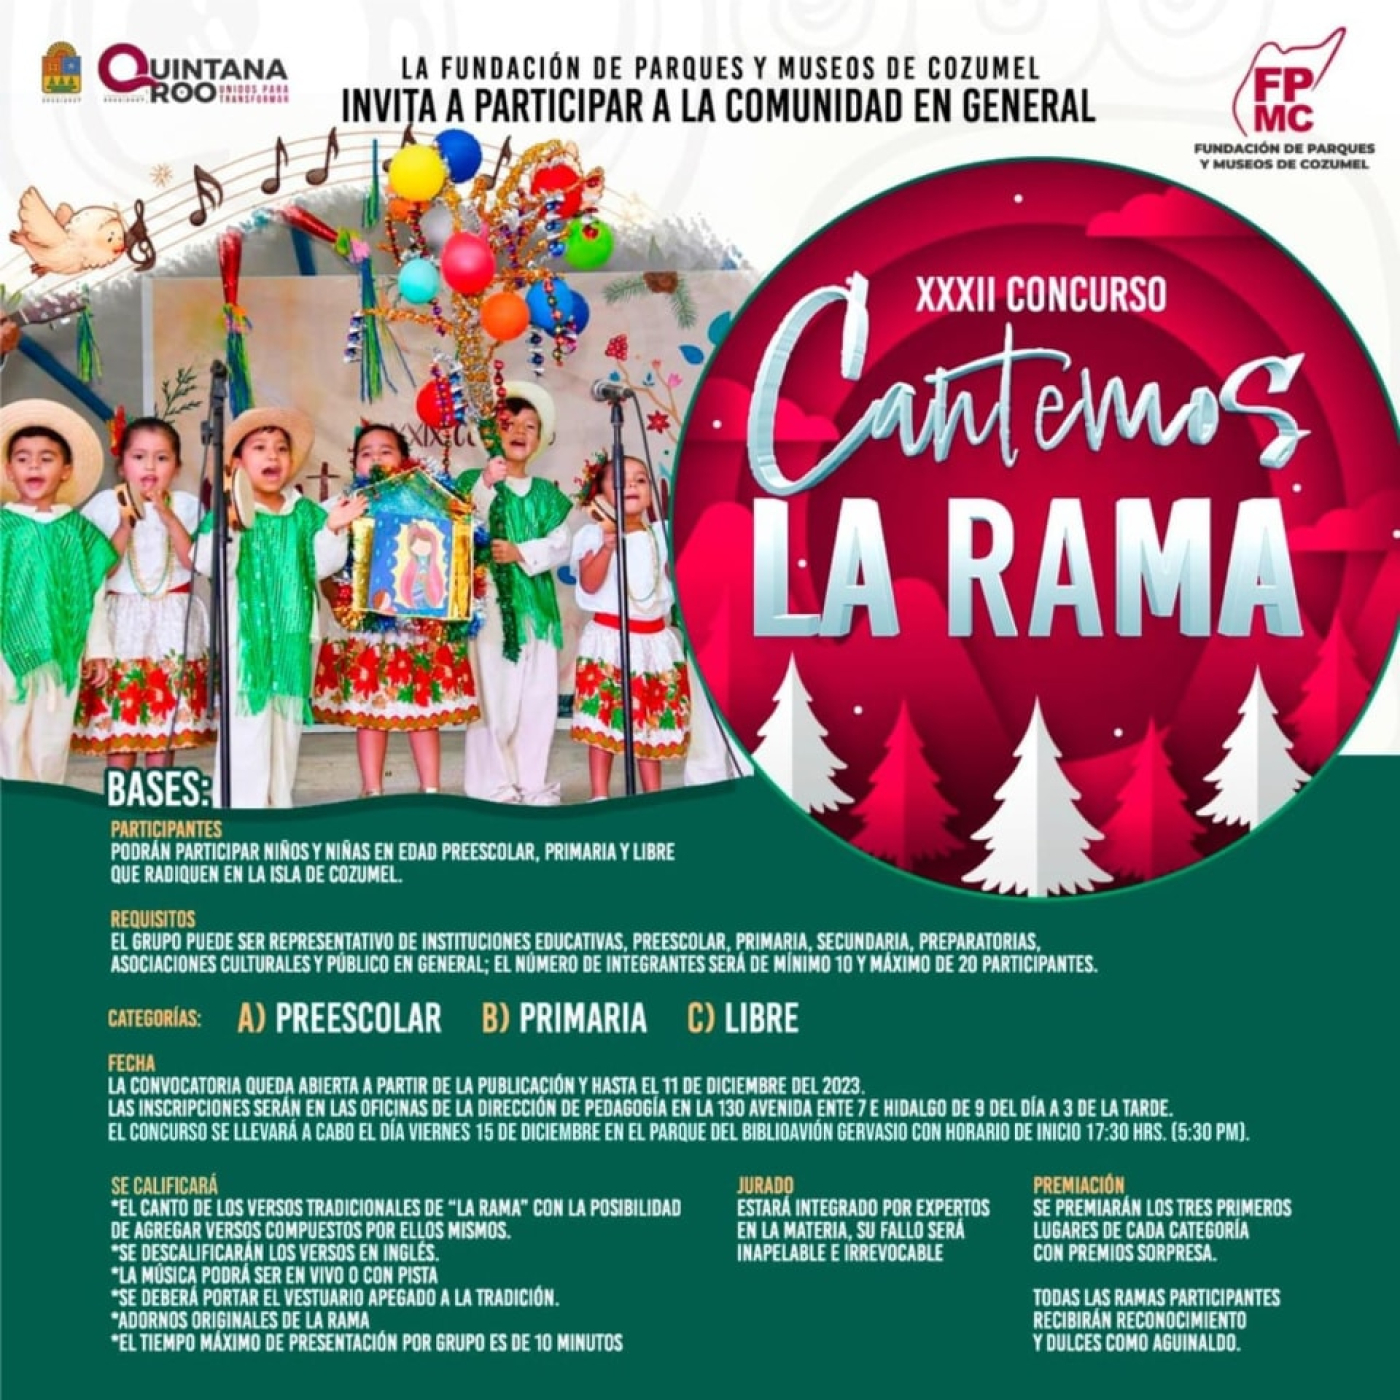 La Fundación de Parques y Museos convoca al XXXII concurso “Cantemos La Rama”